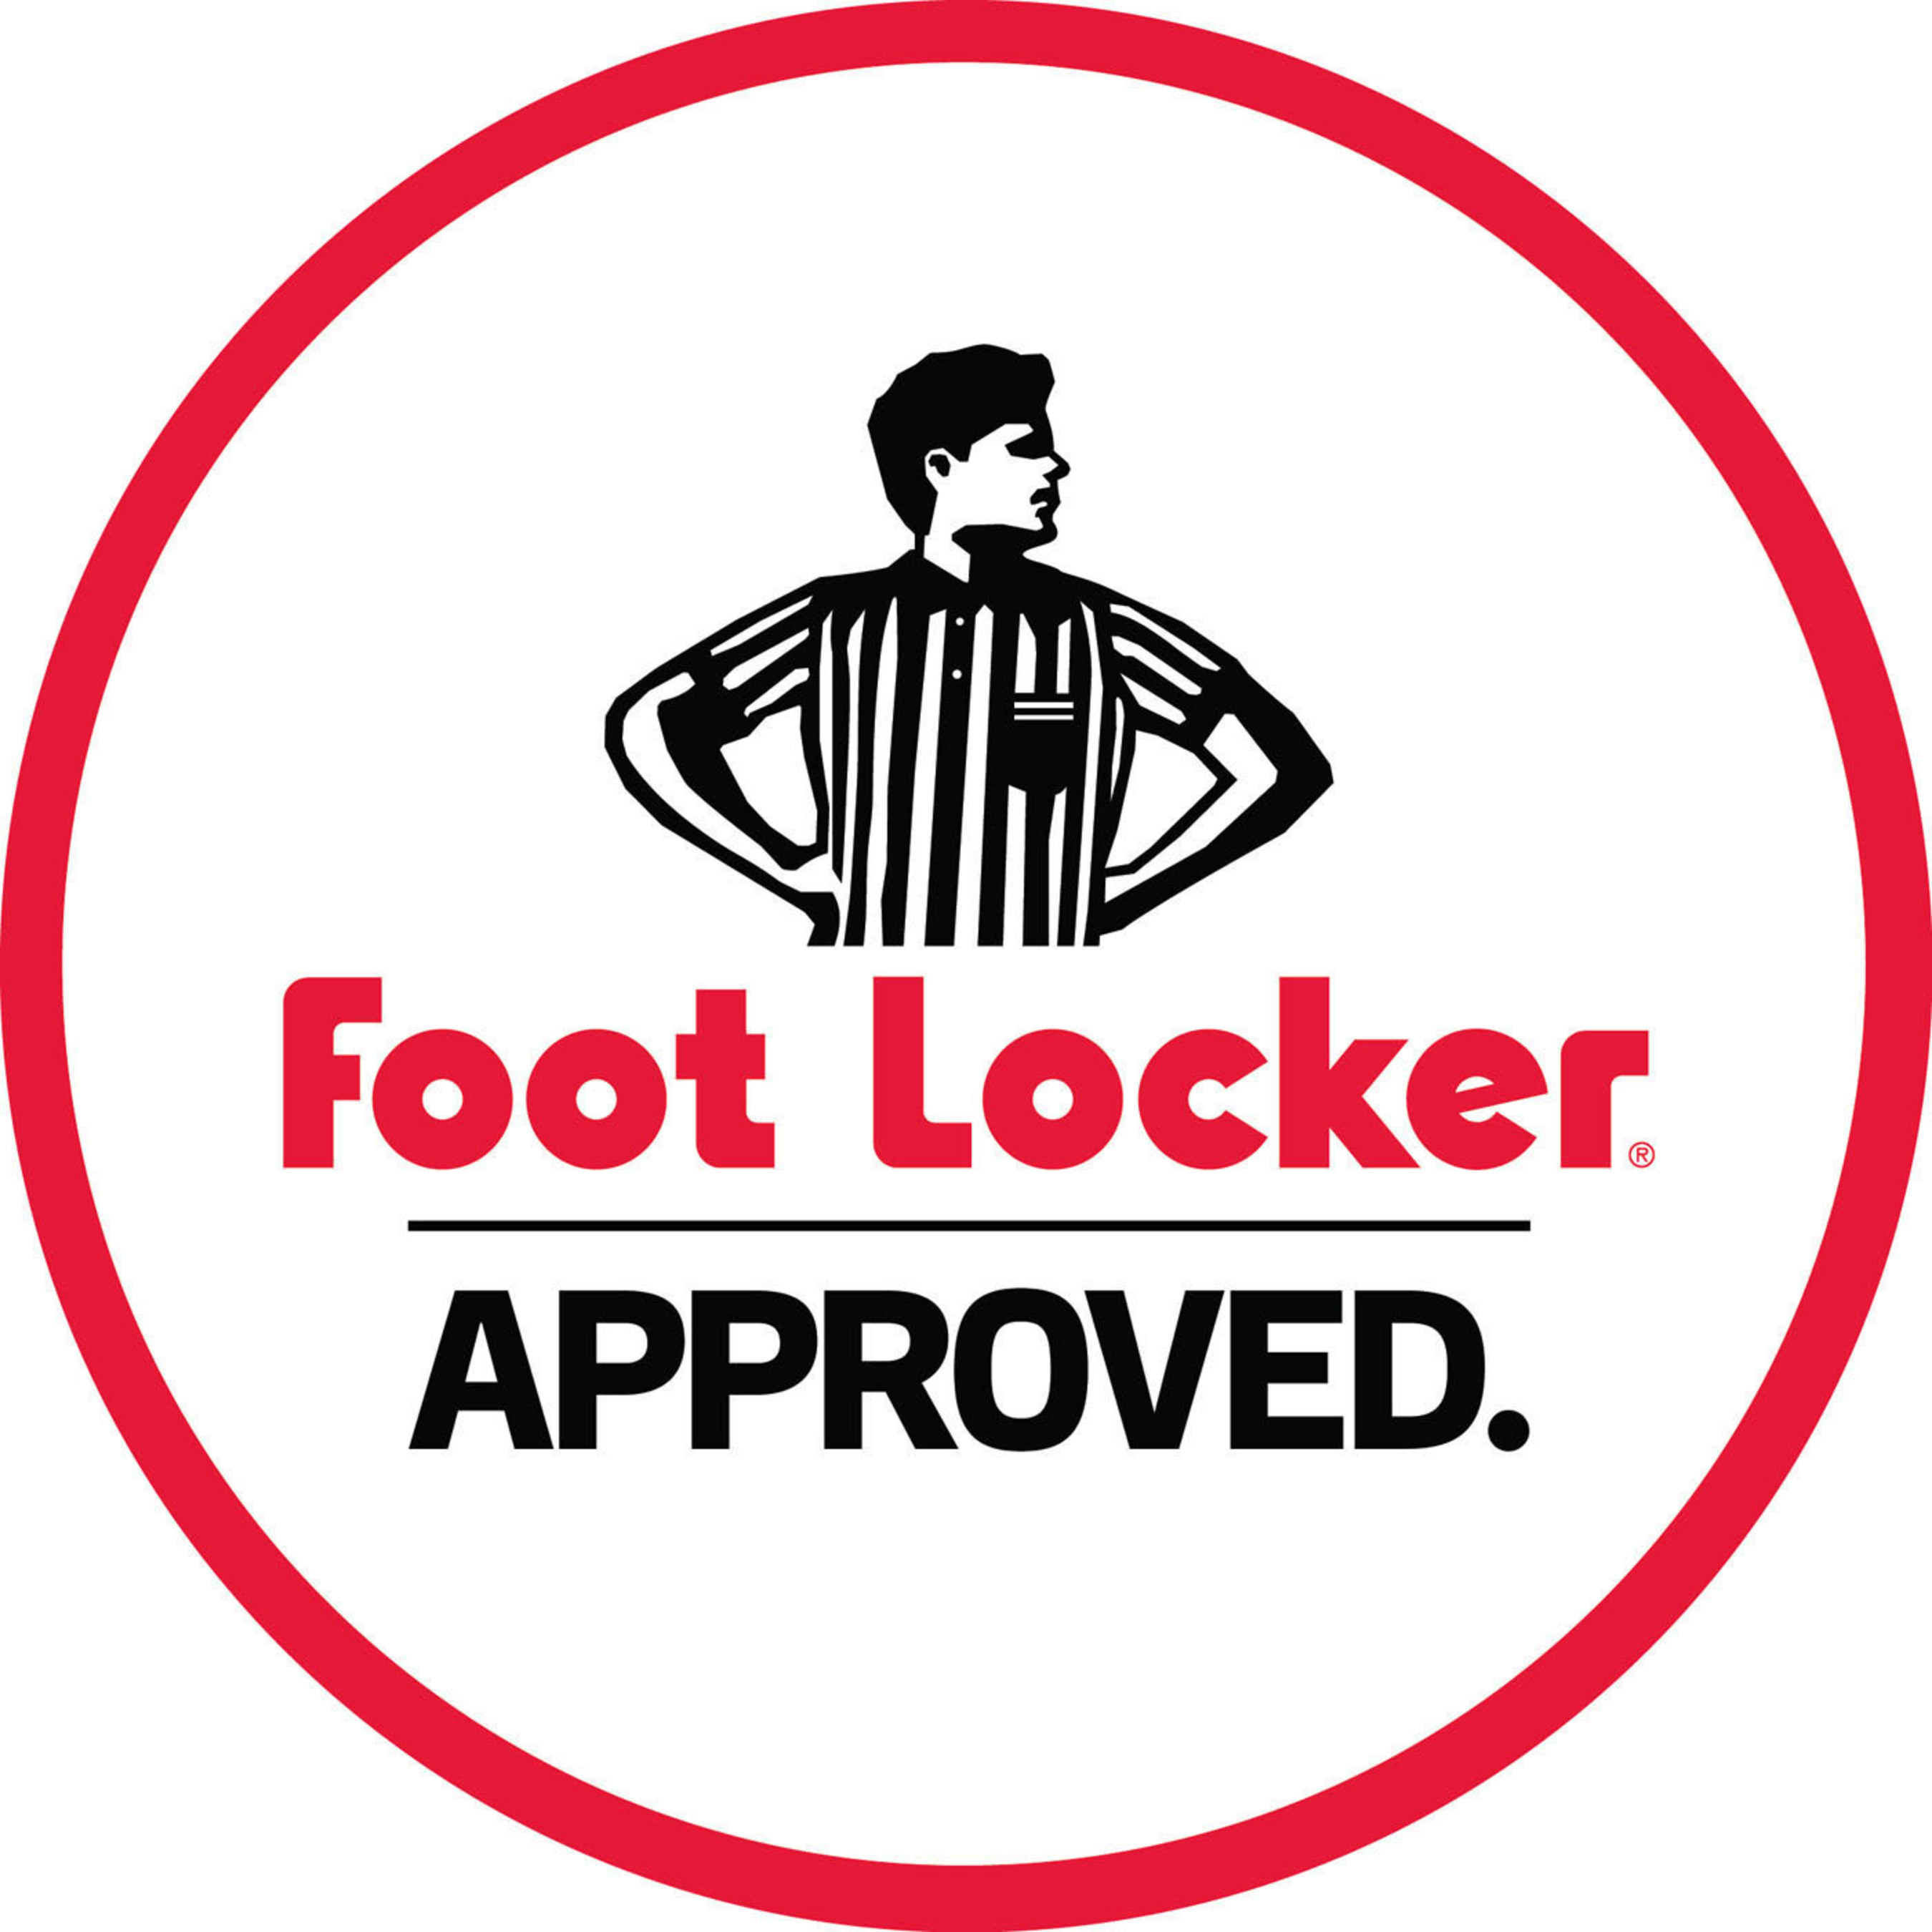 Foot Locker Approved. (PRNewsFoto/Foot Locker, Inc.) (PRNewsFoto/)